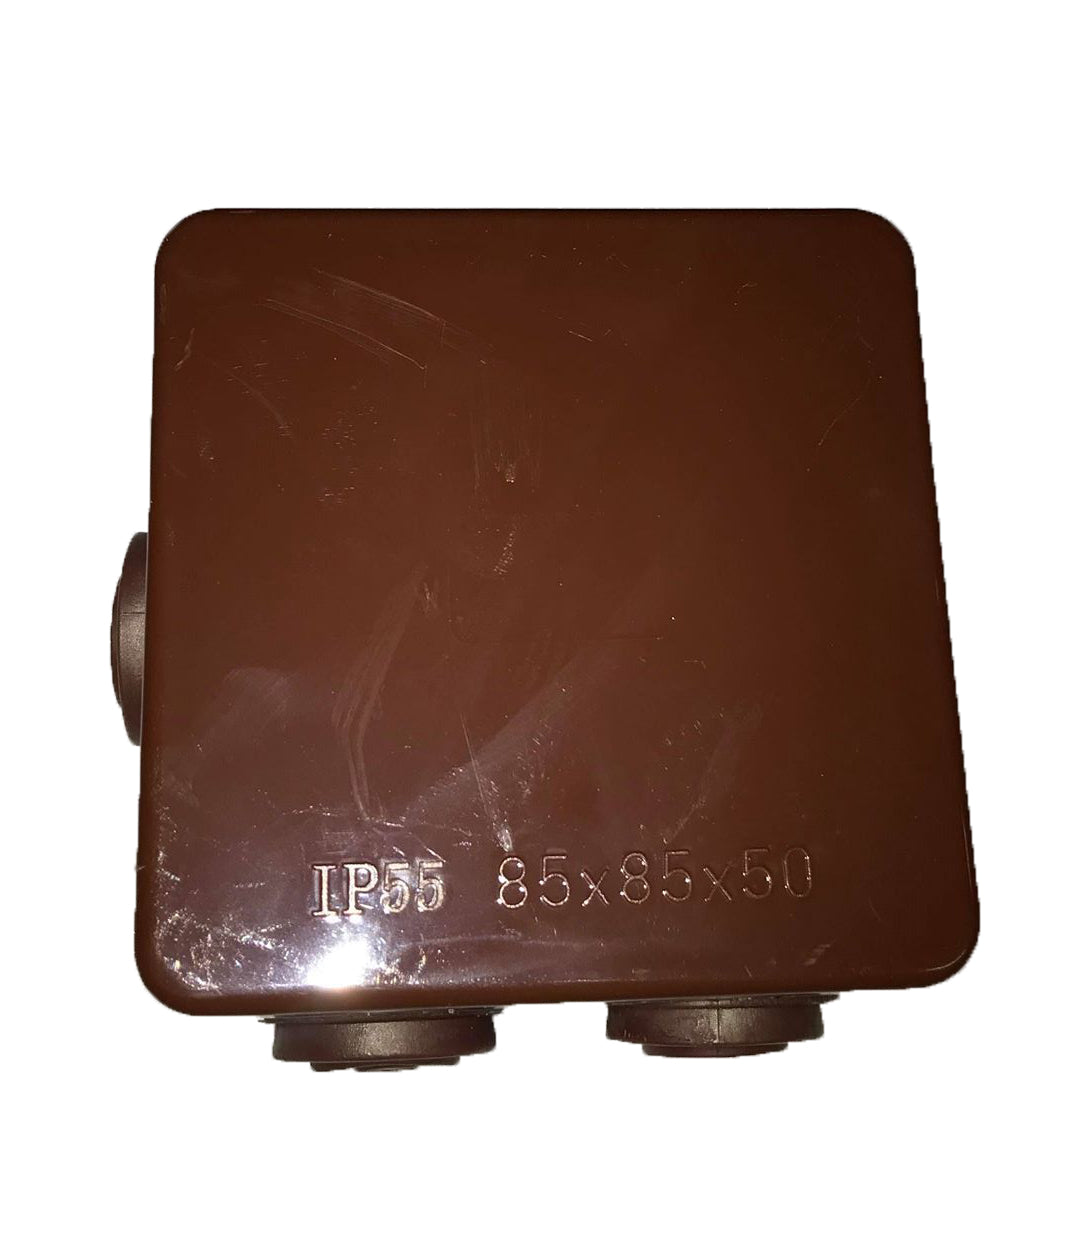 IP55 80mmx80mmx50mm Connection Box BROWN